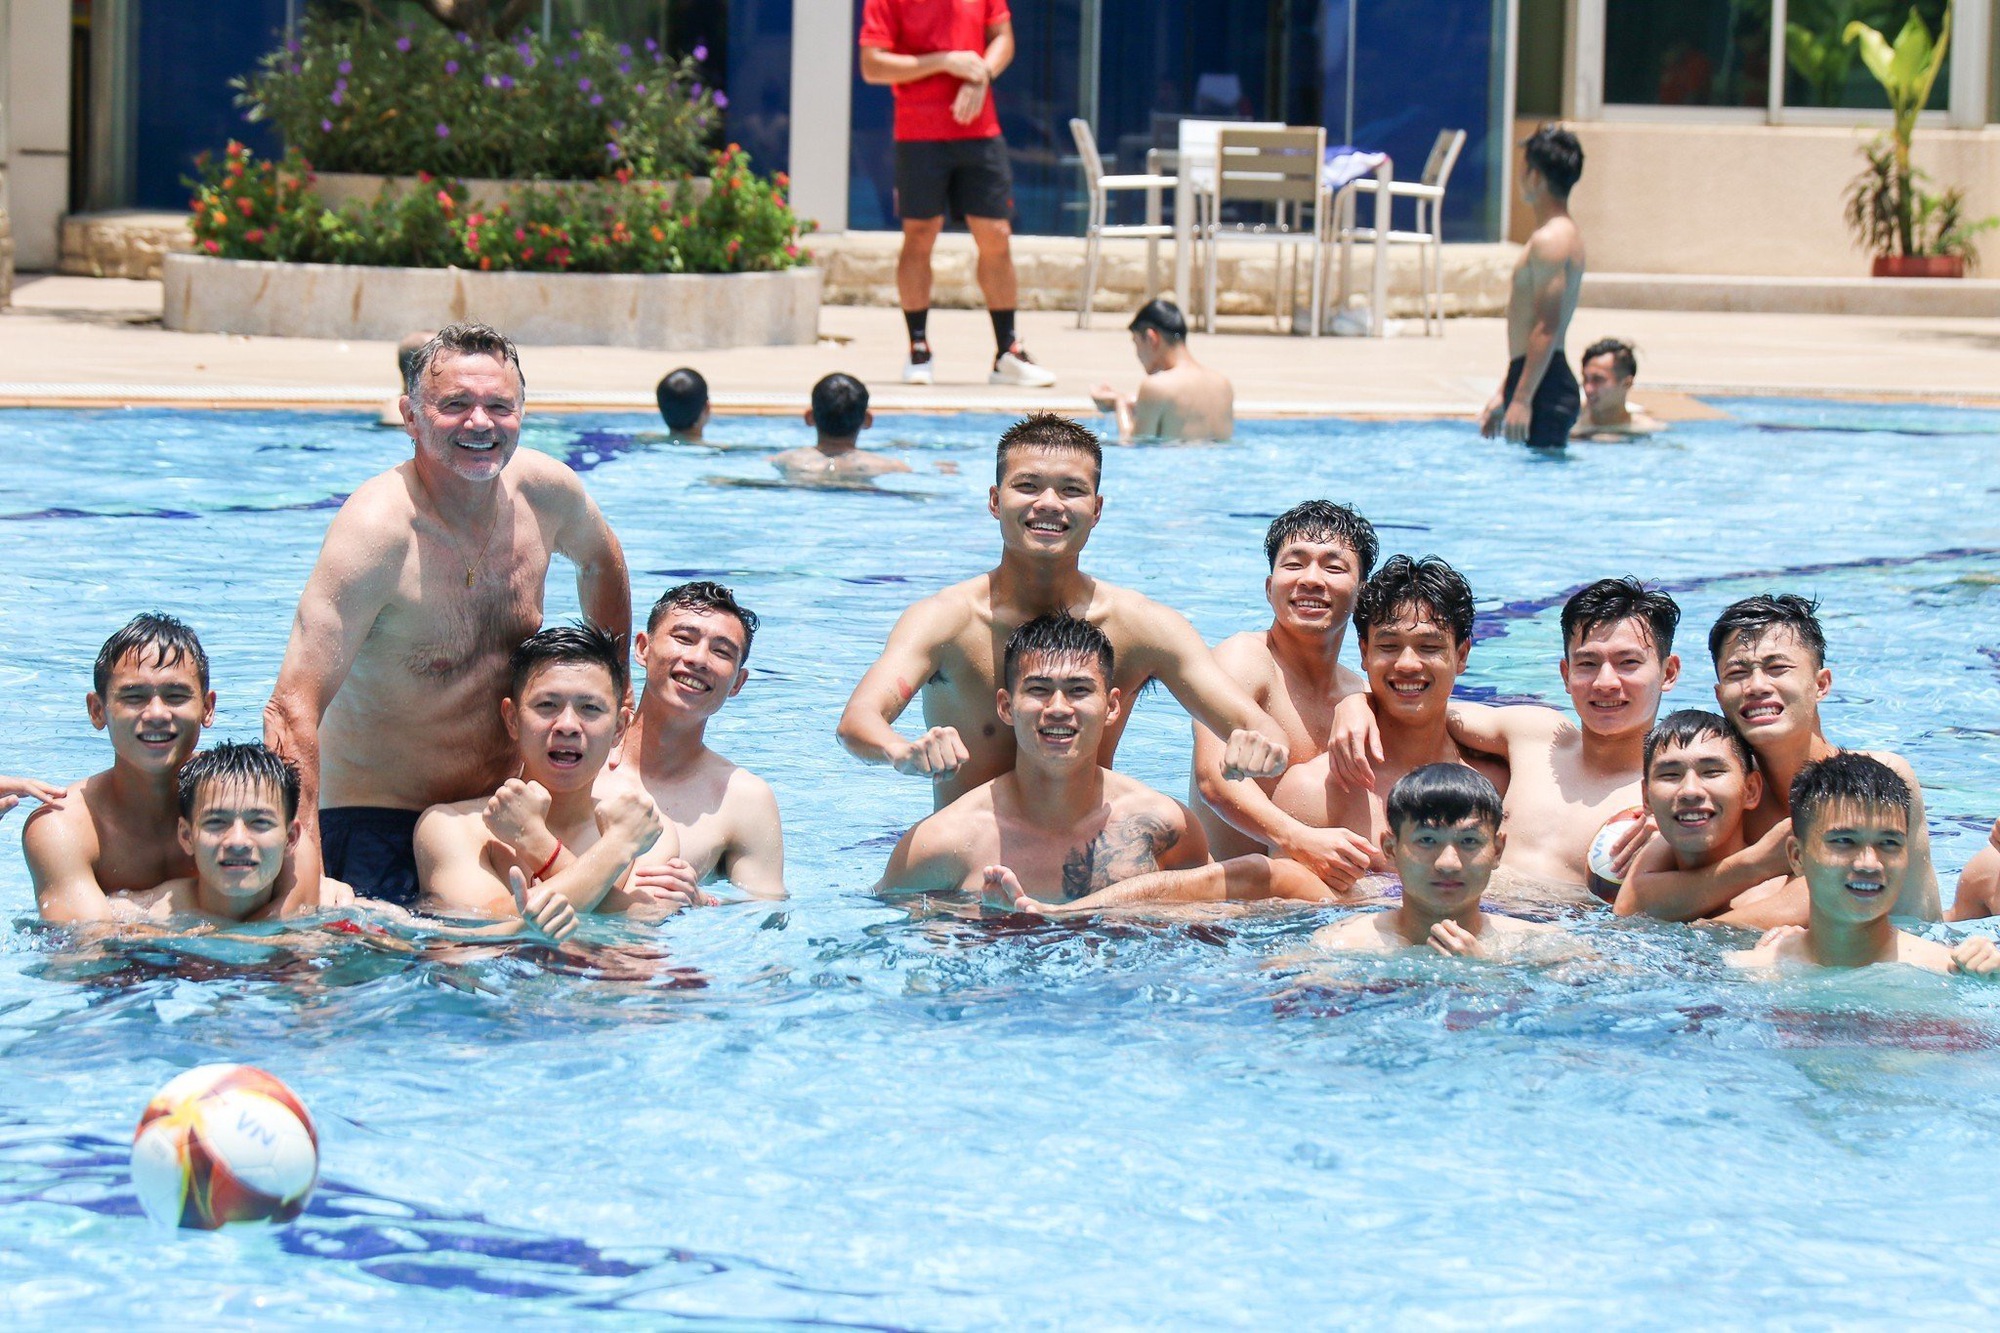 Dàn sao U22 Việt Nam khoe boy 6 múi tại bể bơi - Ảnh 3.